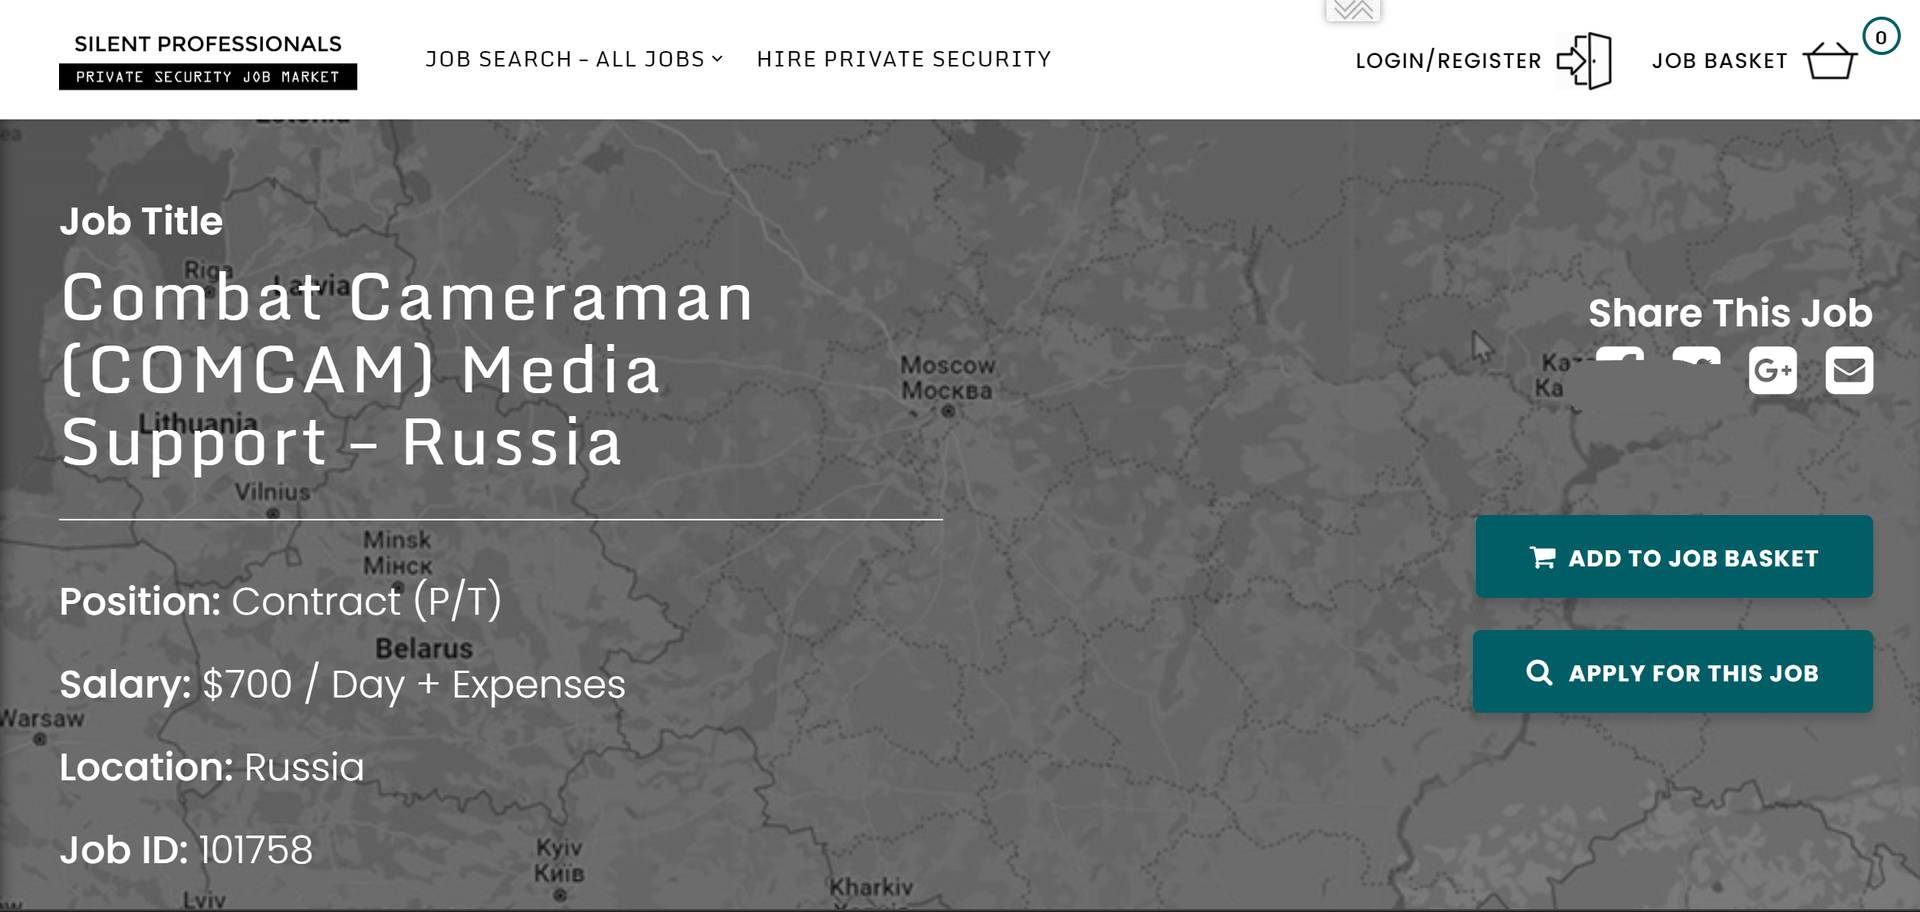 Вакансия «военного оператора» для работы в России, размещенная на сайте SilentProfessionals.org